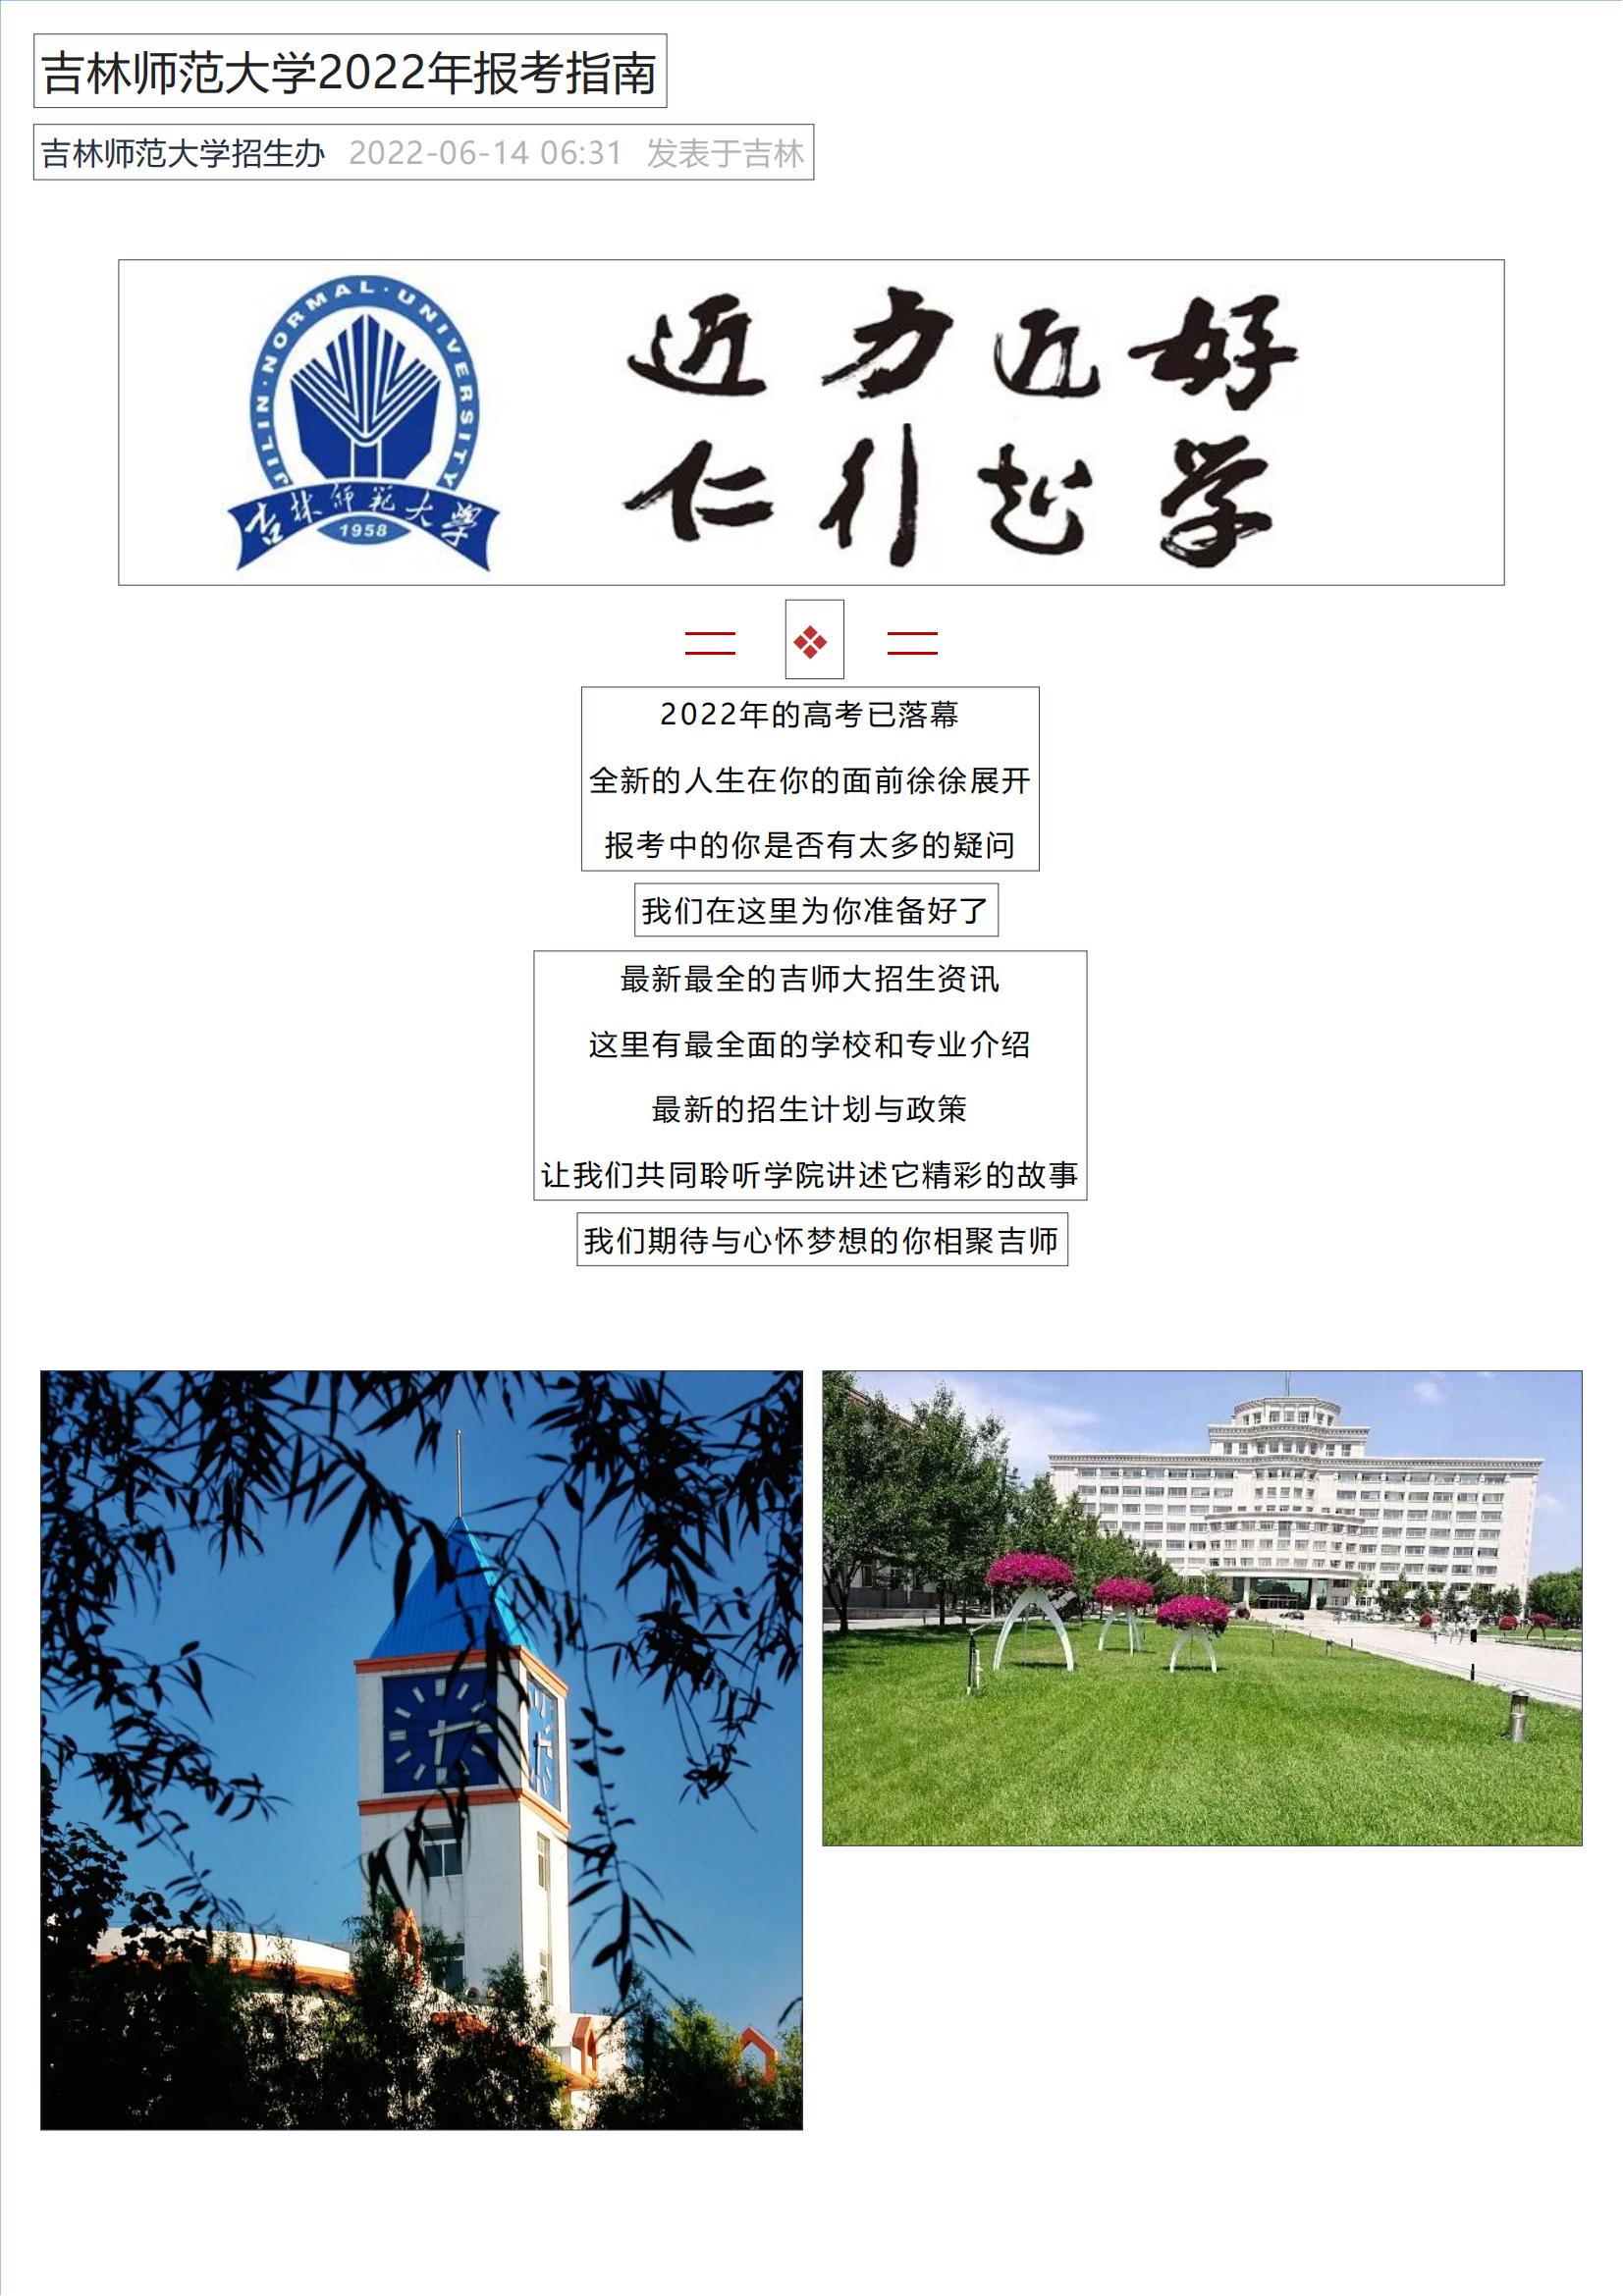 吉林师范大学2022年报考指南_00.jpg